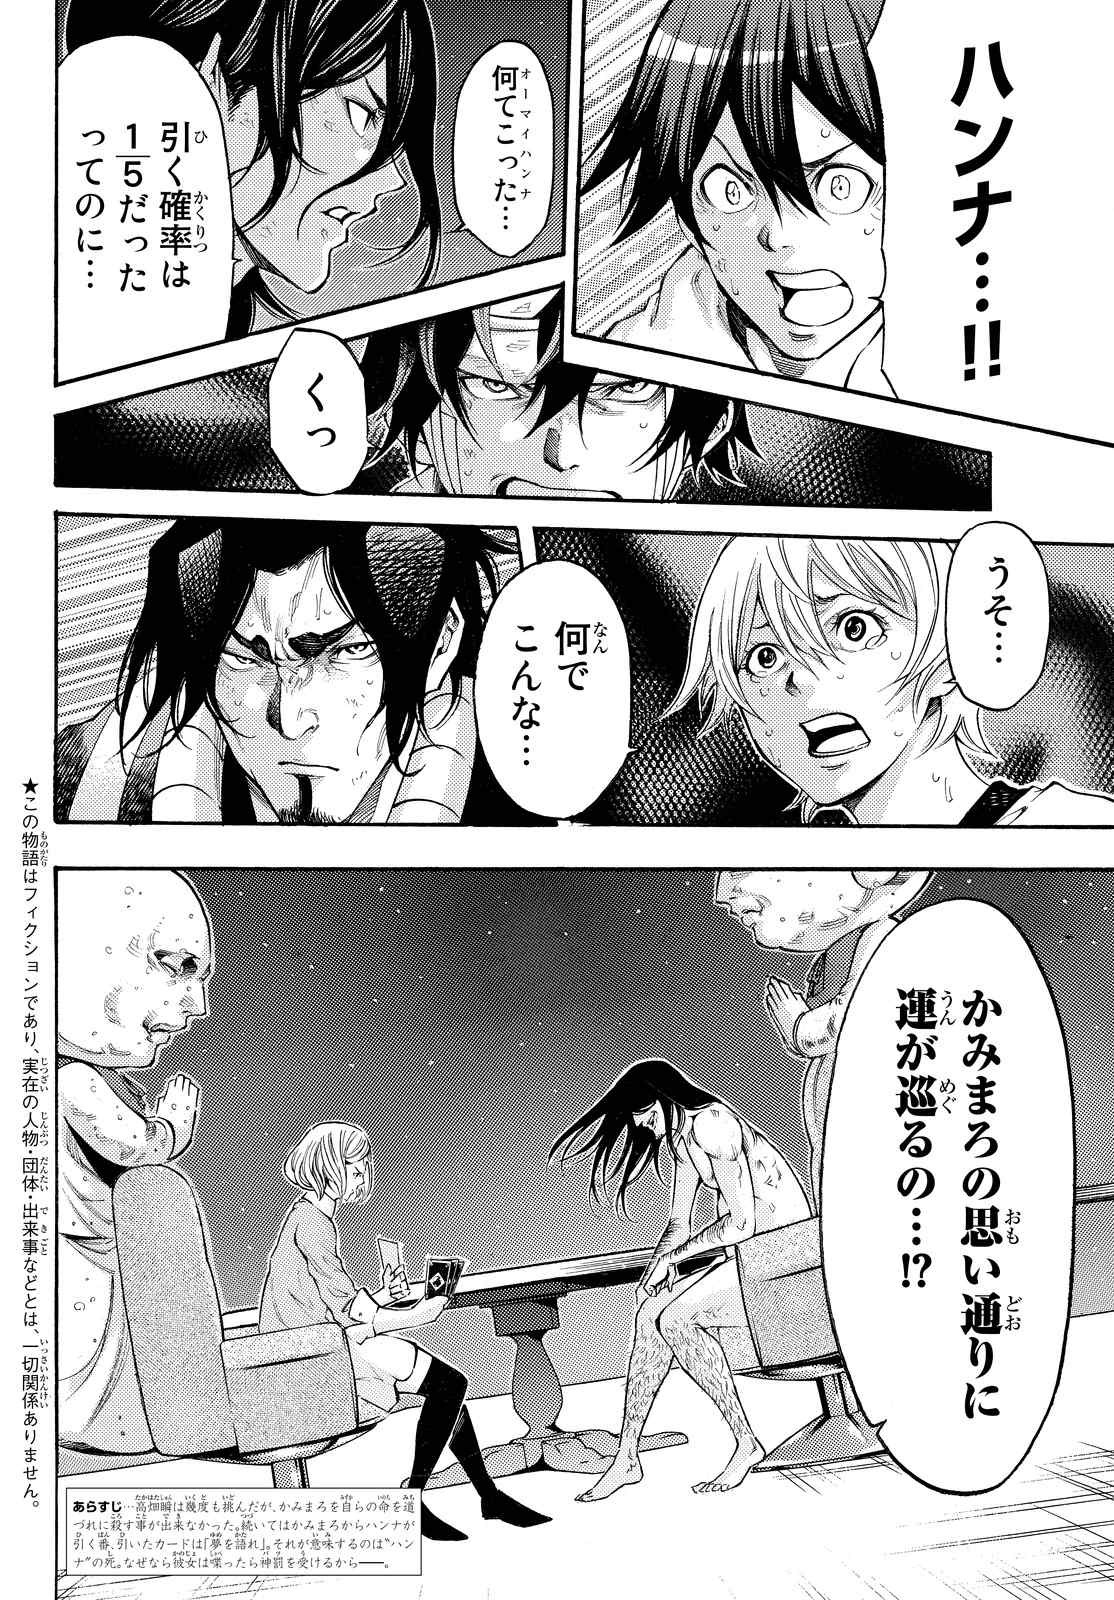 Kamisama no Ituori - Chapter 171 - Page 2